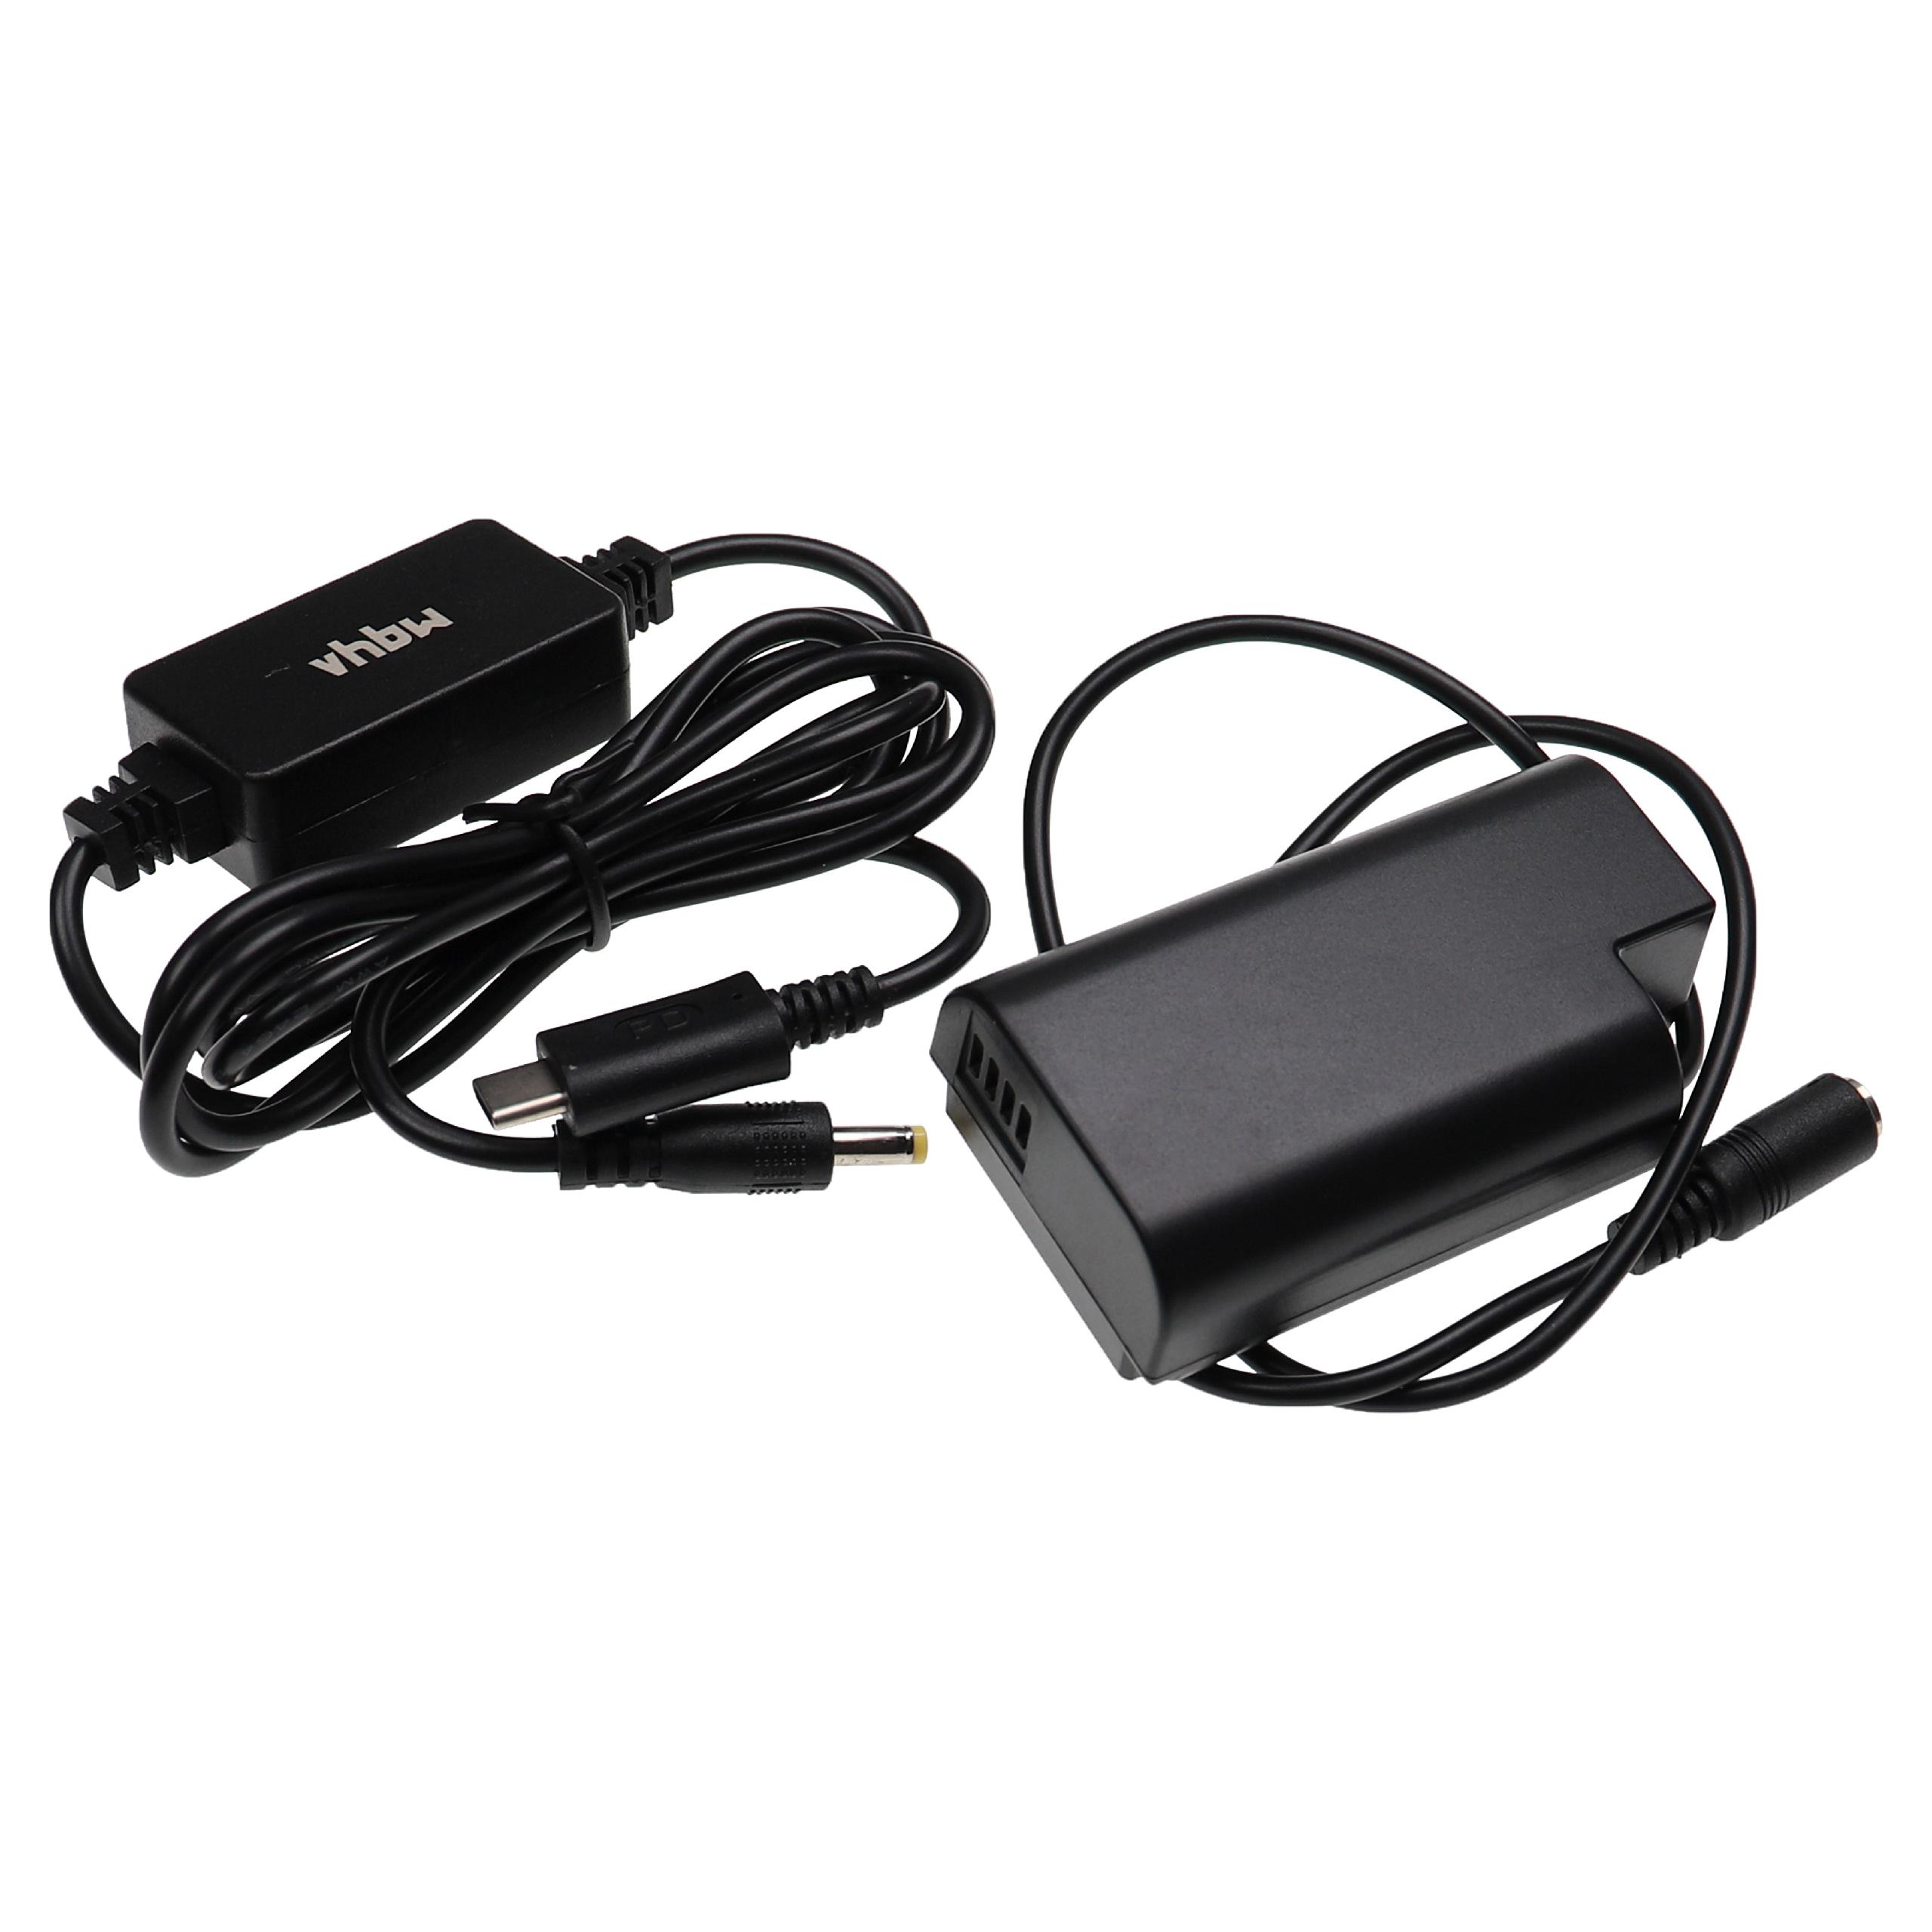 USB Netzteil als Ersatz für Panasonic DMW-AC10, DMW-AC8 für Kamera + DC Kuppler ersetzt Panasonic DMW-DCC16